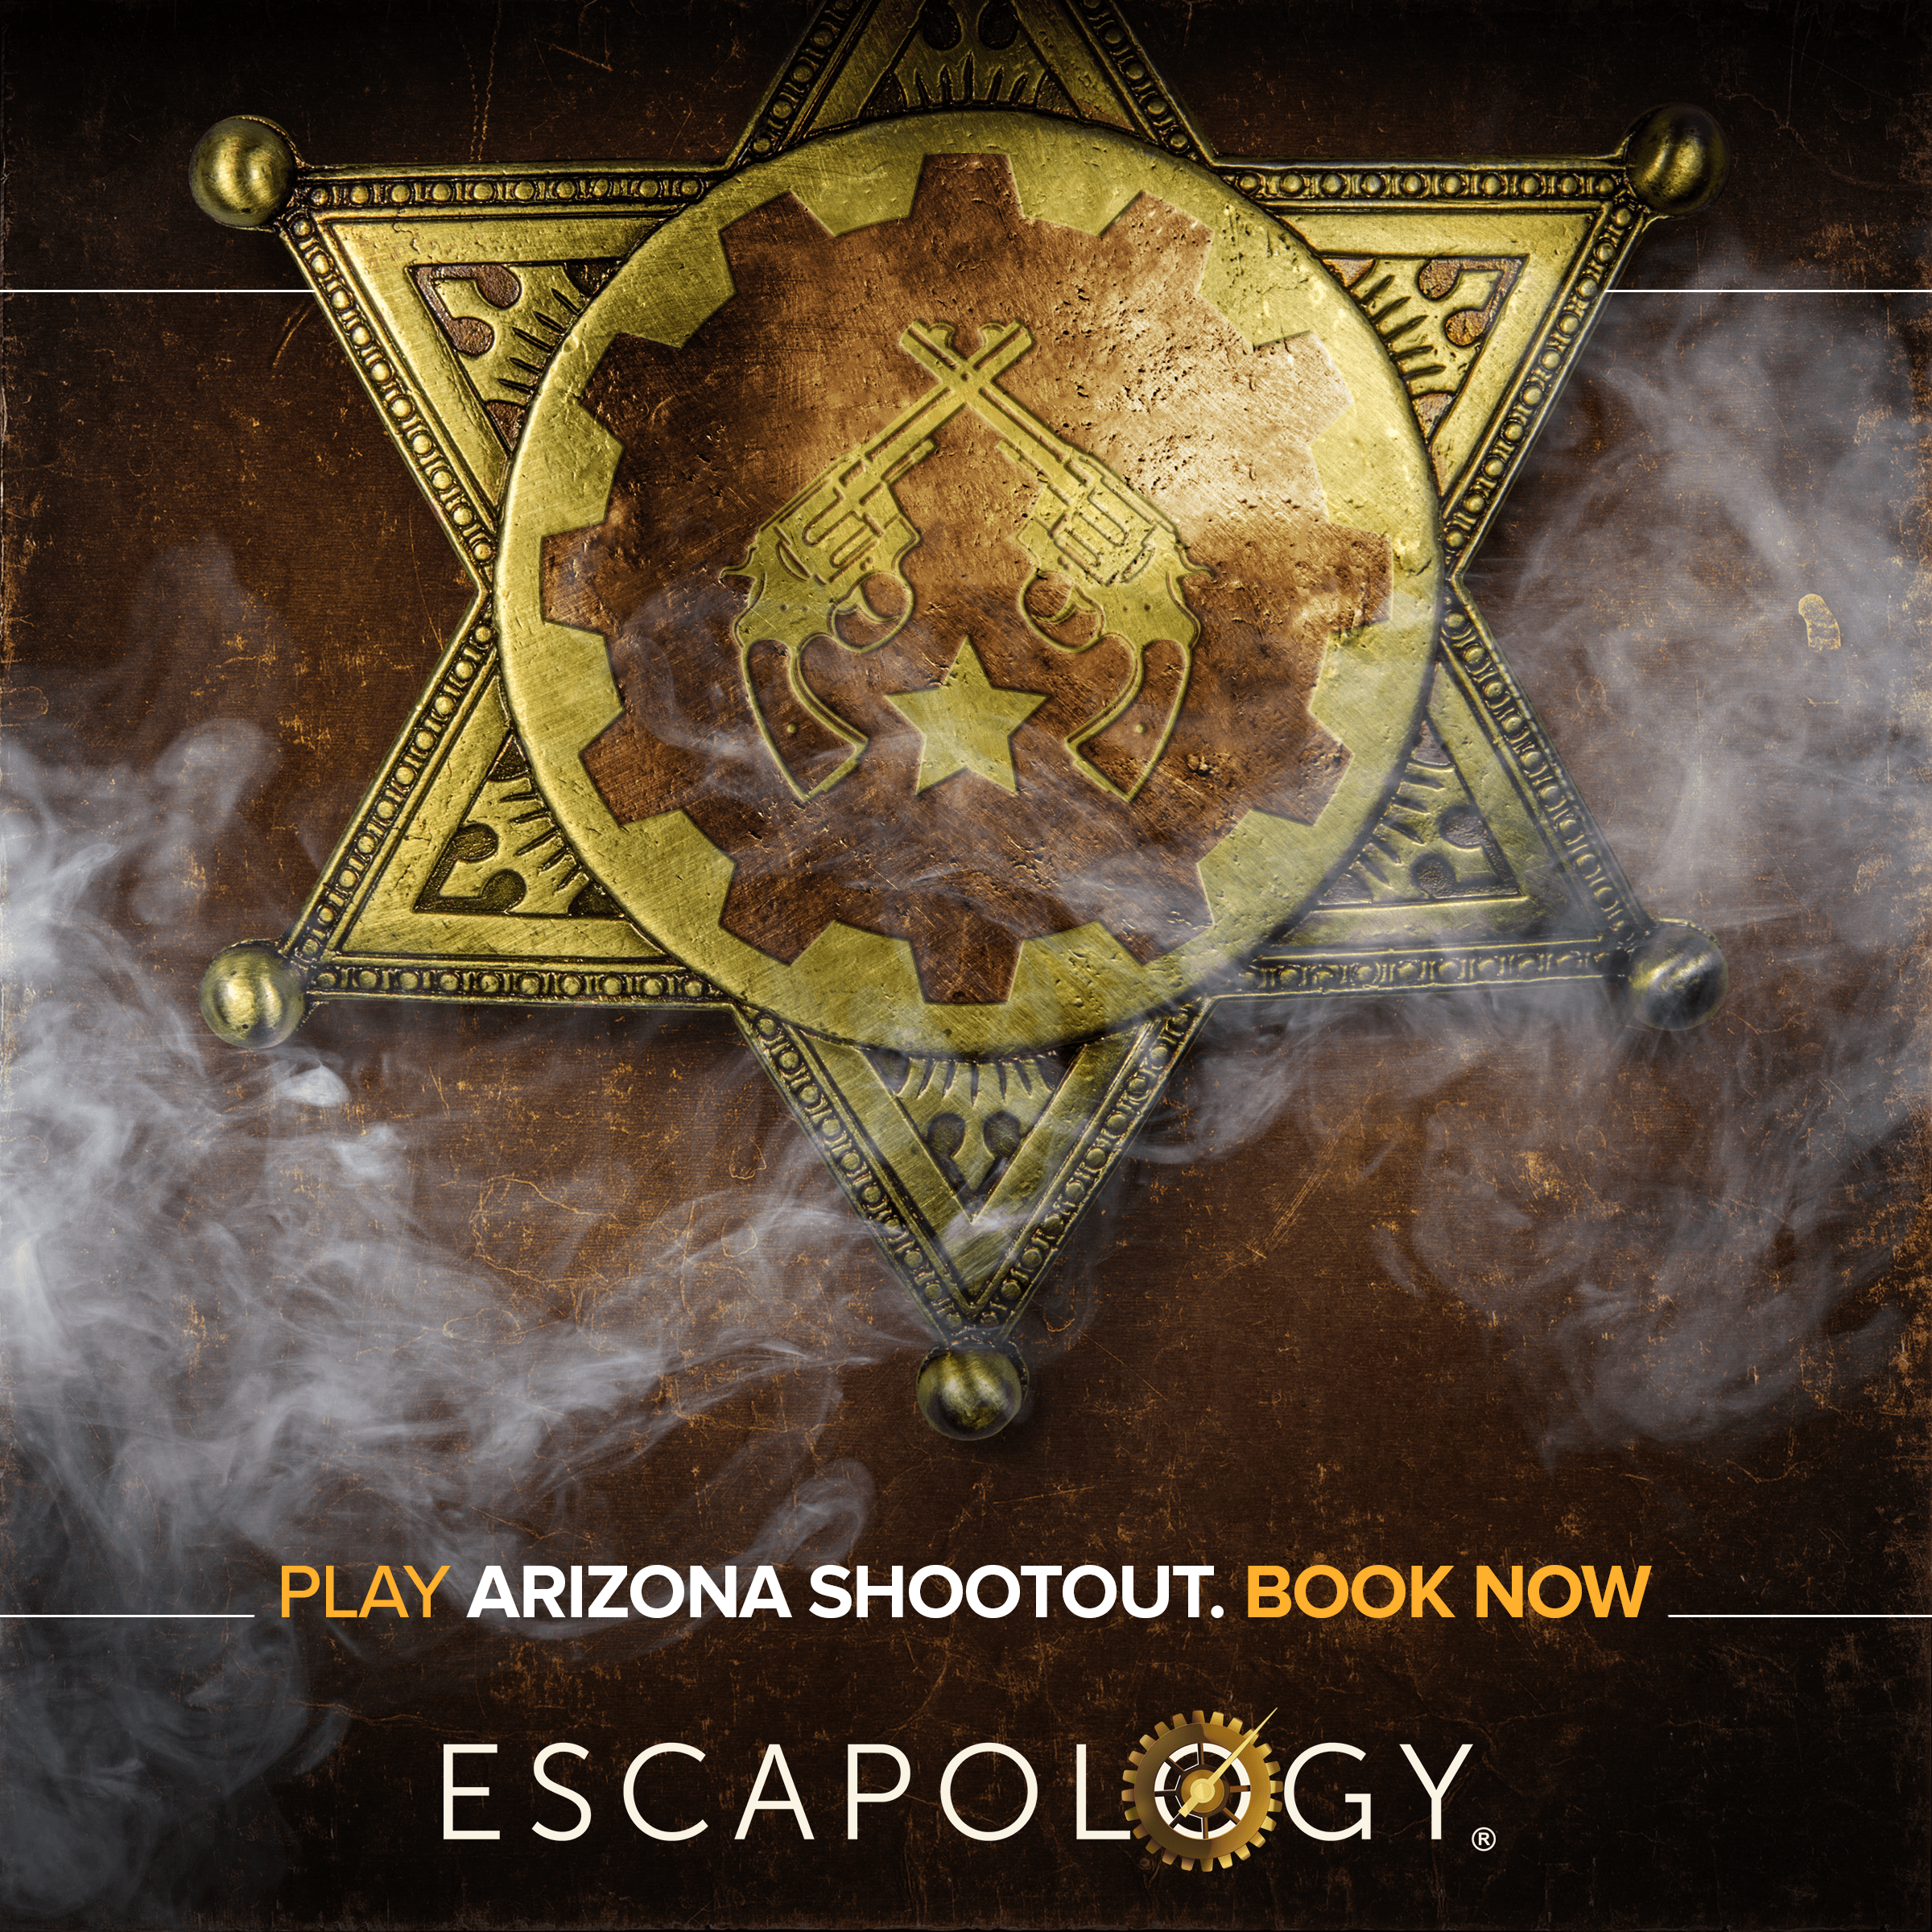 Arizona Shootout Game - Carousel